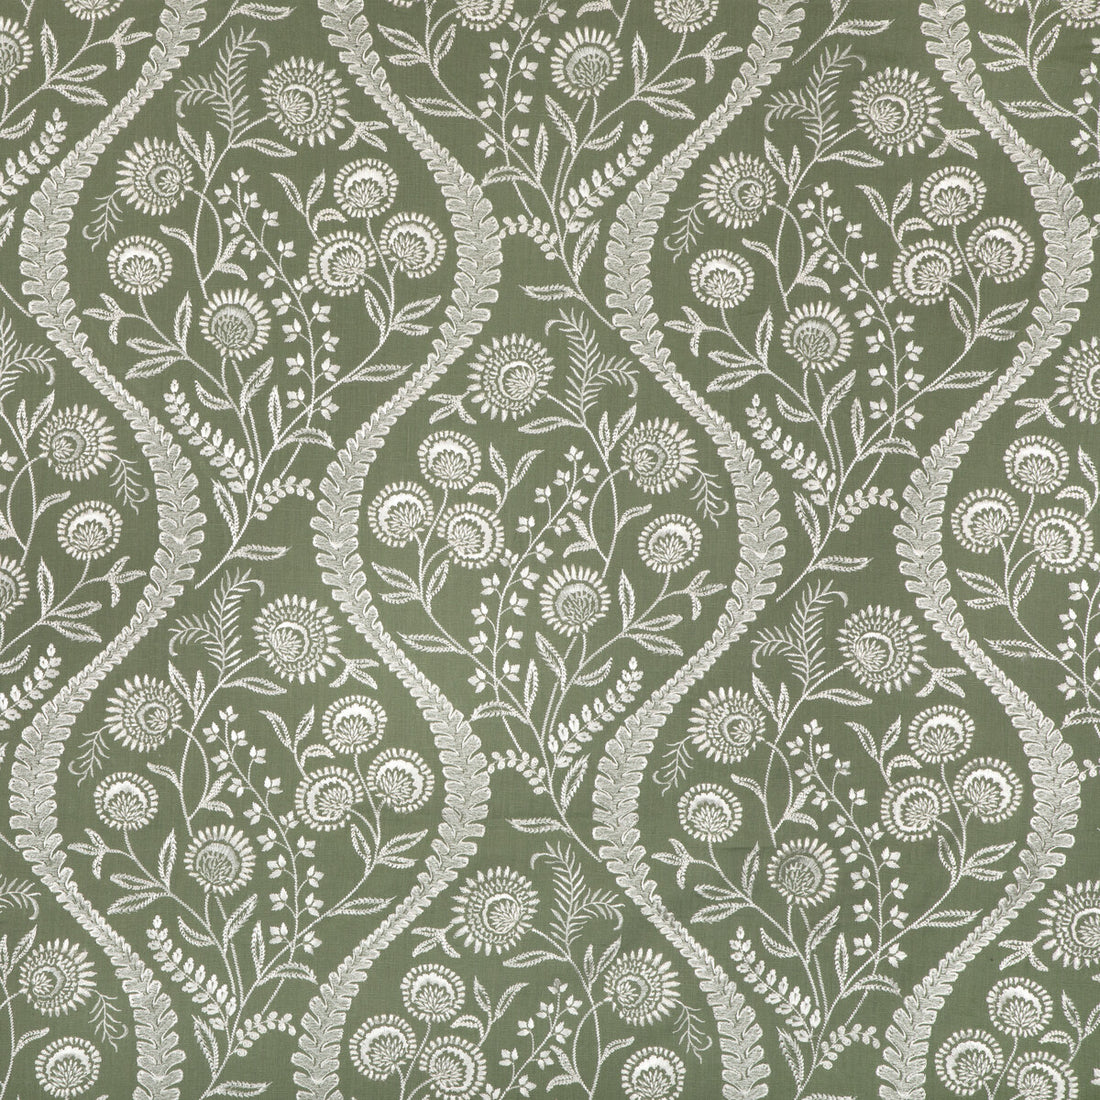 Floriblanca fabric in green color - pattern 2020219.3.0 - by Lee Jofa in the Oscar De La Renta IV collection